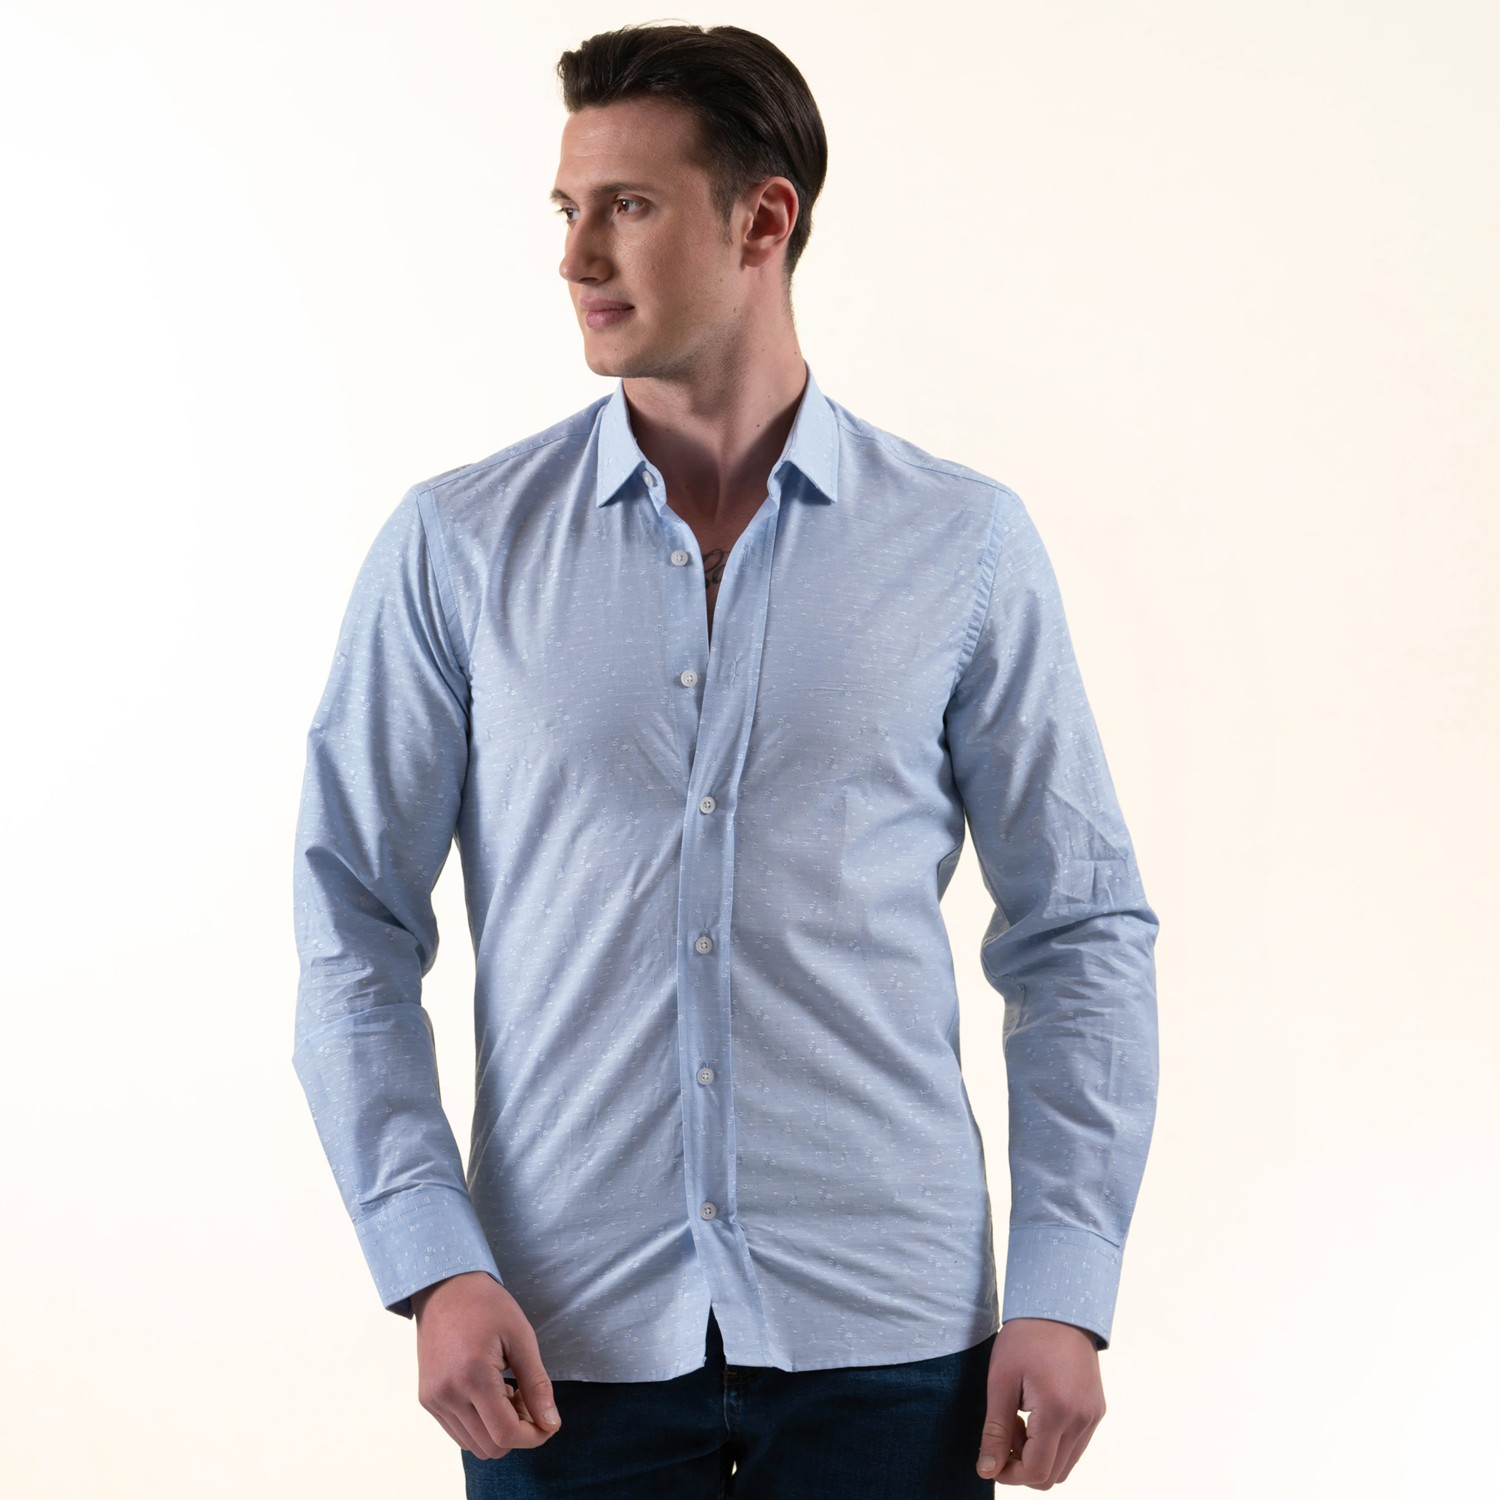 Эксклюзивная белая рубашка для мужчин из хлопка с узором на голубом фоне, приталенная.